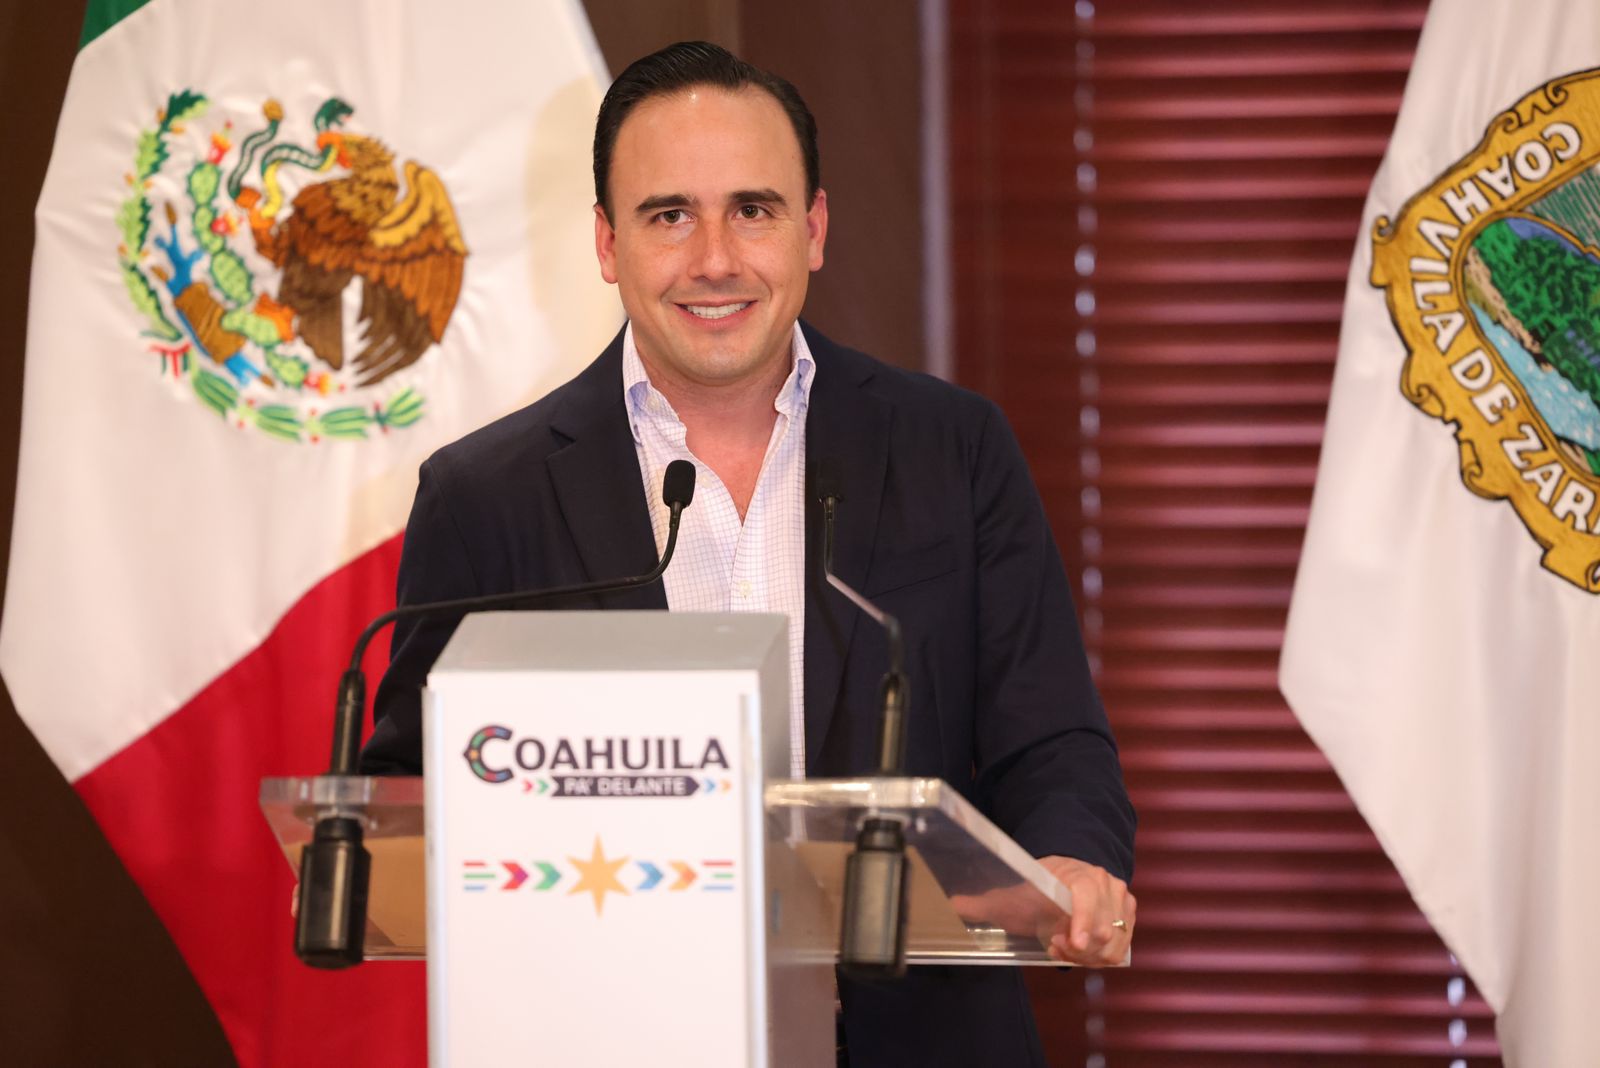 Coahuila avanza a pasos de gigante: Gobernador Manolo Jiménez